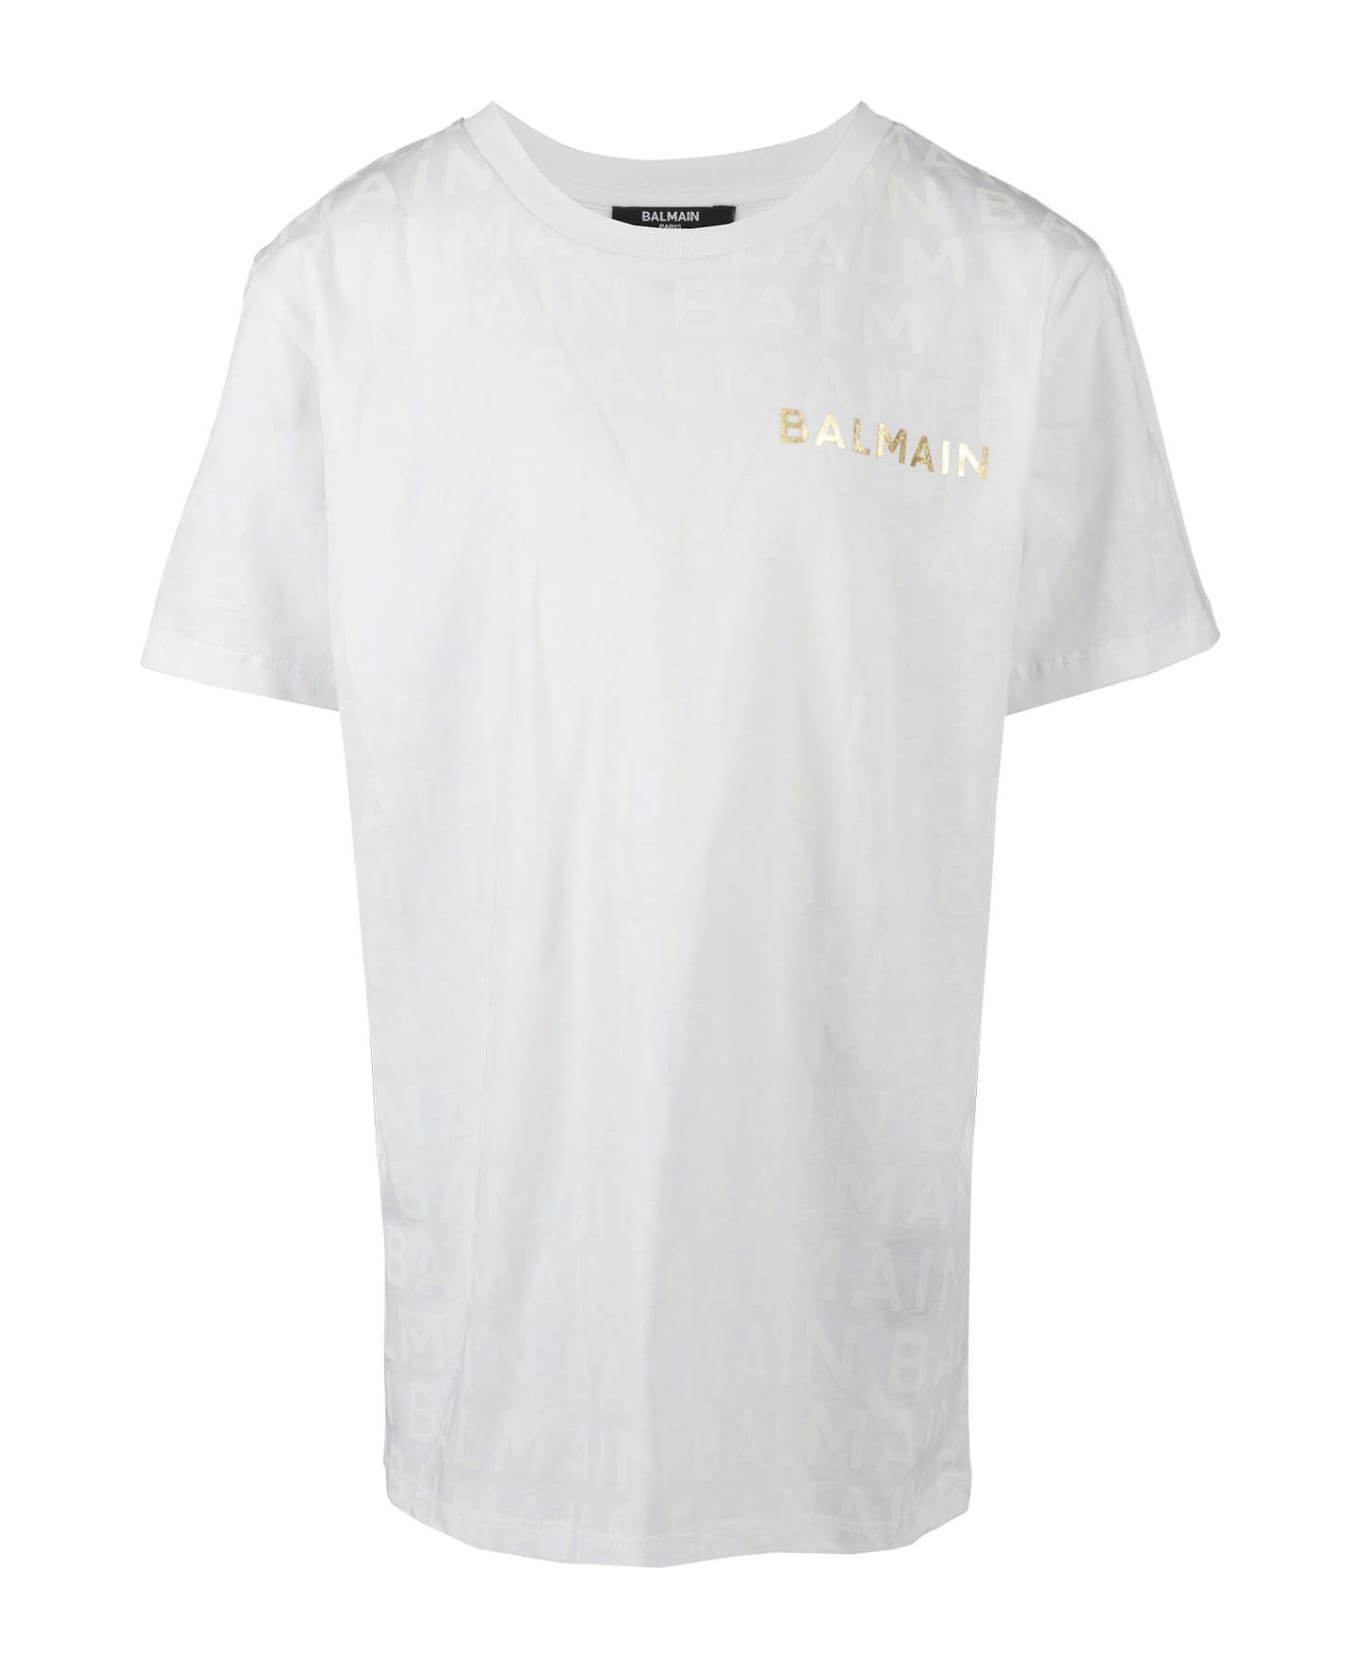 Balmain Tshirt - Bc White